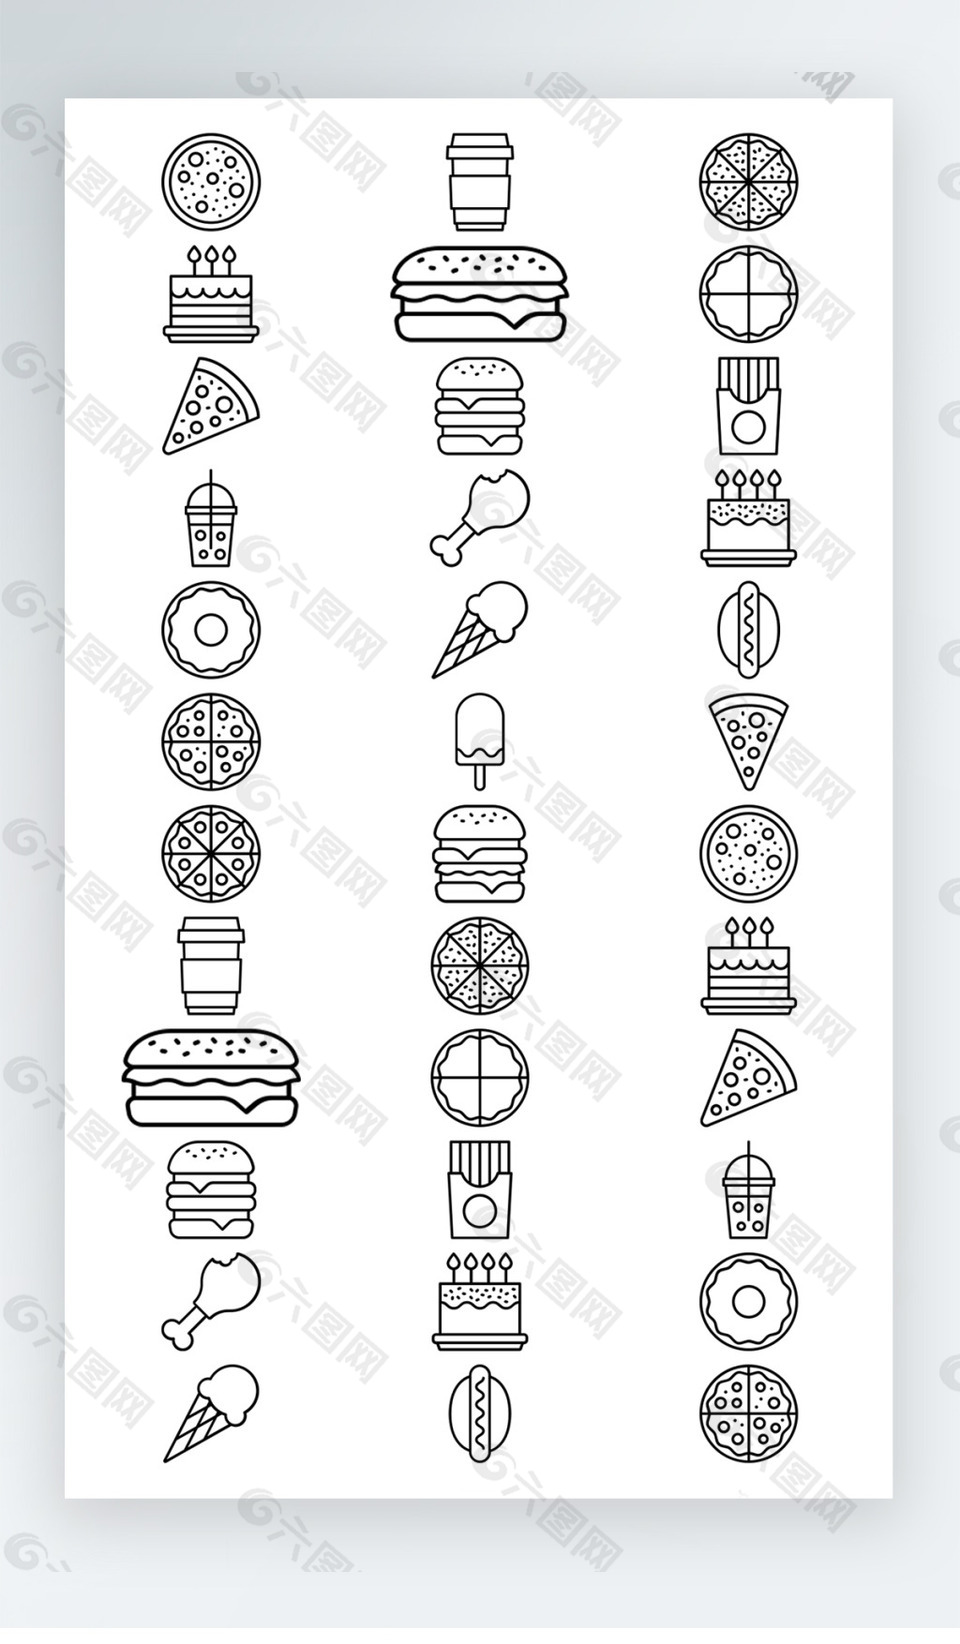 面食汉堡披萨食物图标黑白线稿图标素材AI